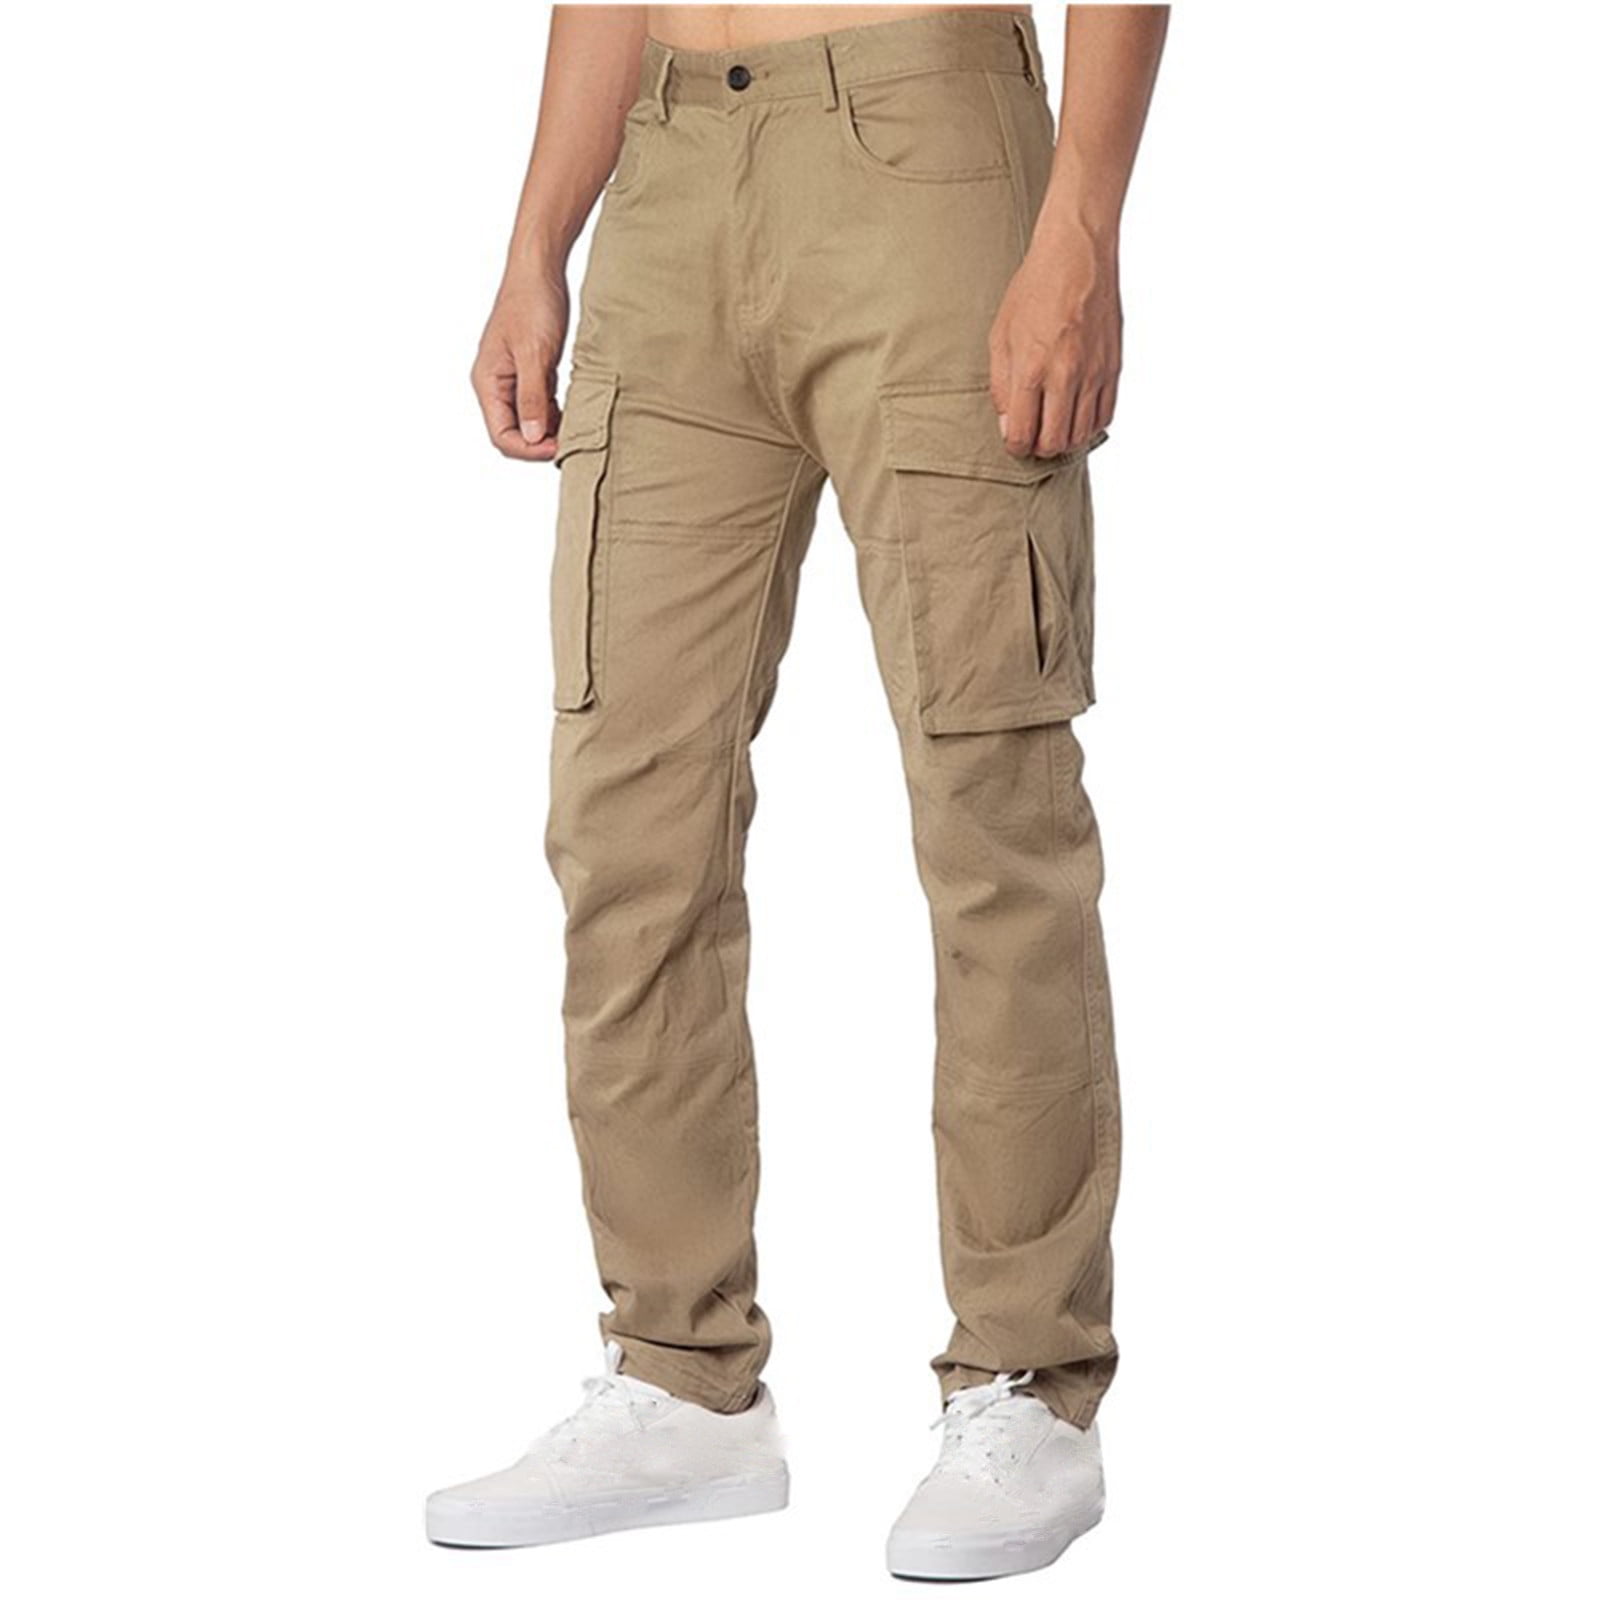 Elainilye Fashion Cargo Pants Men Solid Multi-Pocket Chinos Pants ...